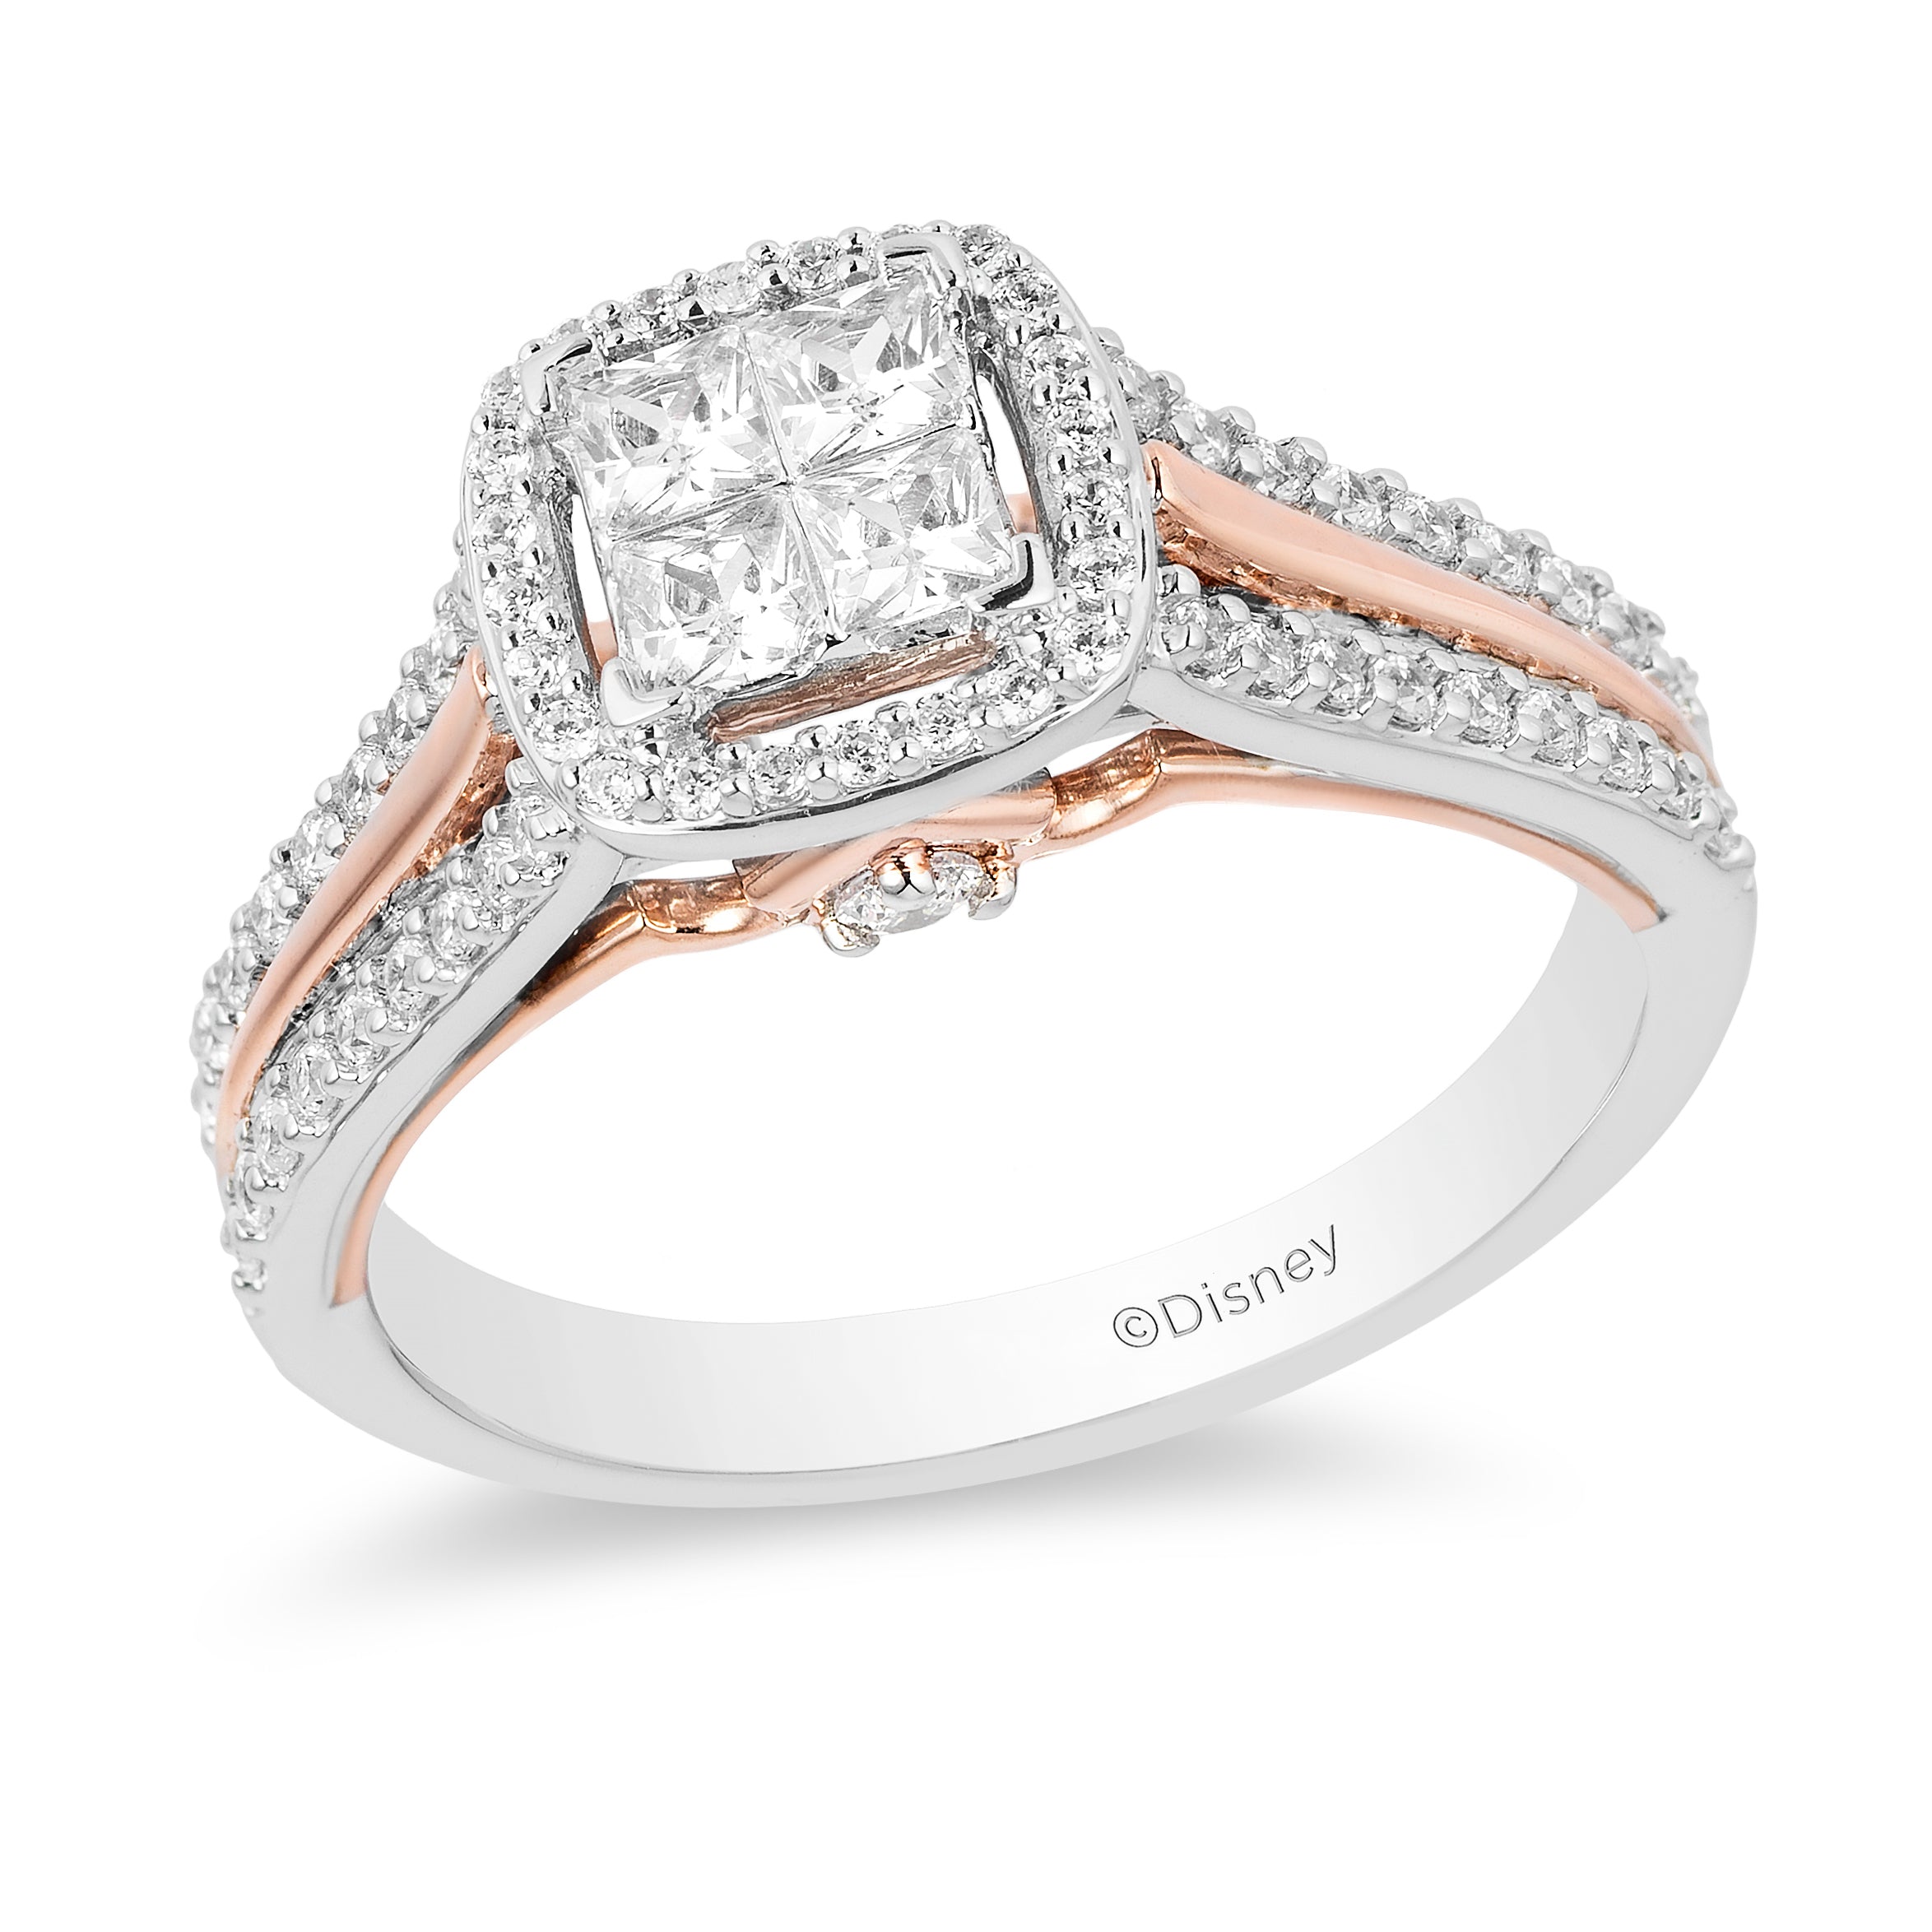 2.8 Carat Diamond Engagement Ring, 14K White Gold, Round Engagement Ring,  Pave Style Engagement Ring, Diamond Ring, Diamond, Free Shipping - Etsy  Norway